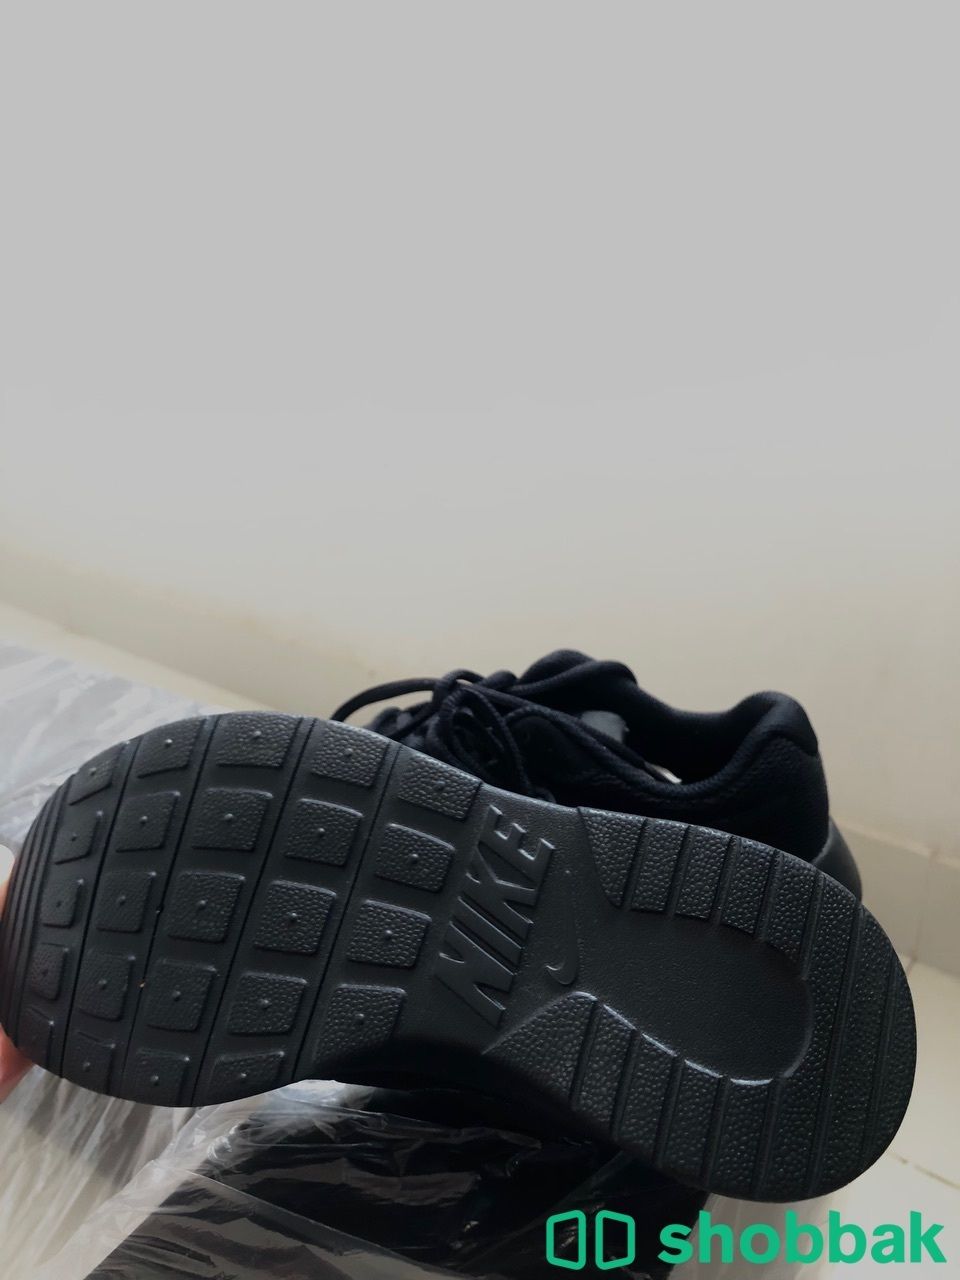 جزمة رياضية نايك Nike للاطفال مقاس 35.5  Shobbak Saudi Arabia